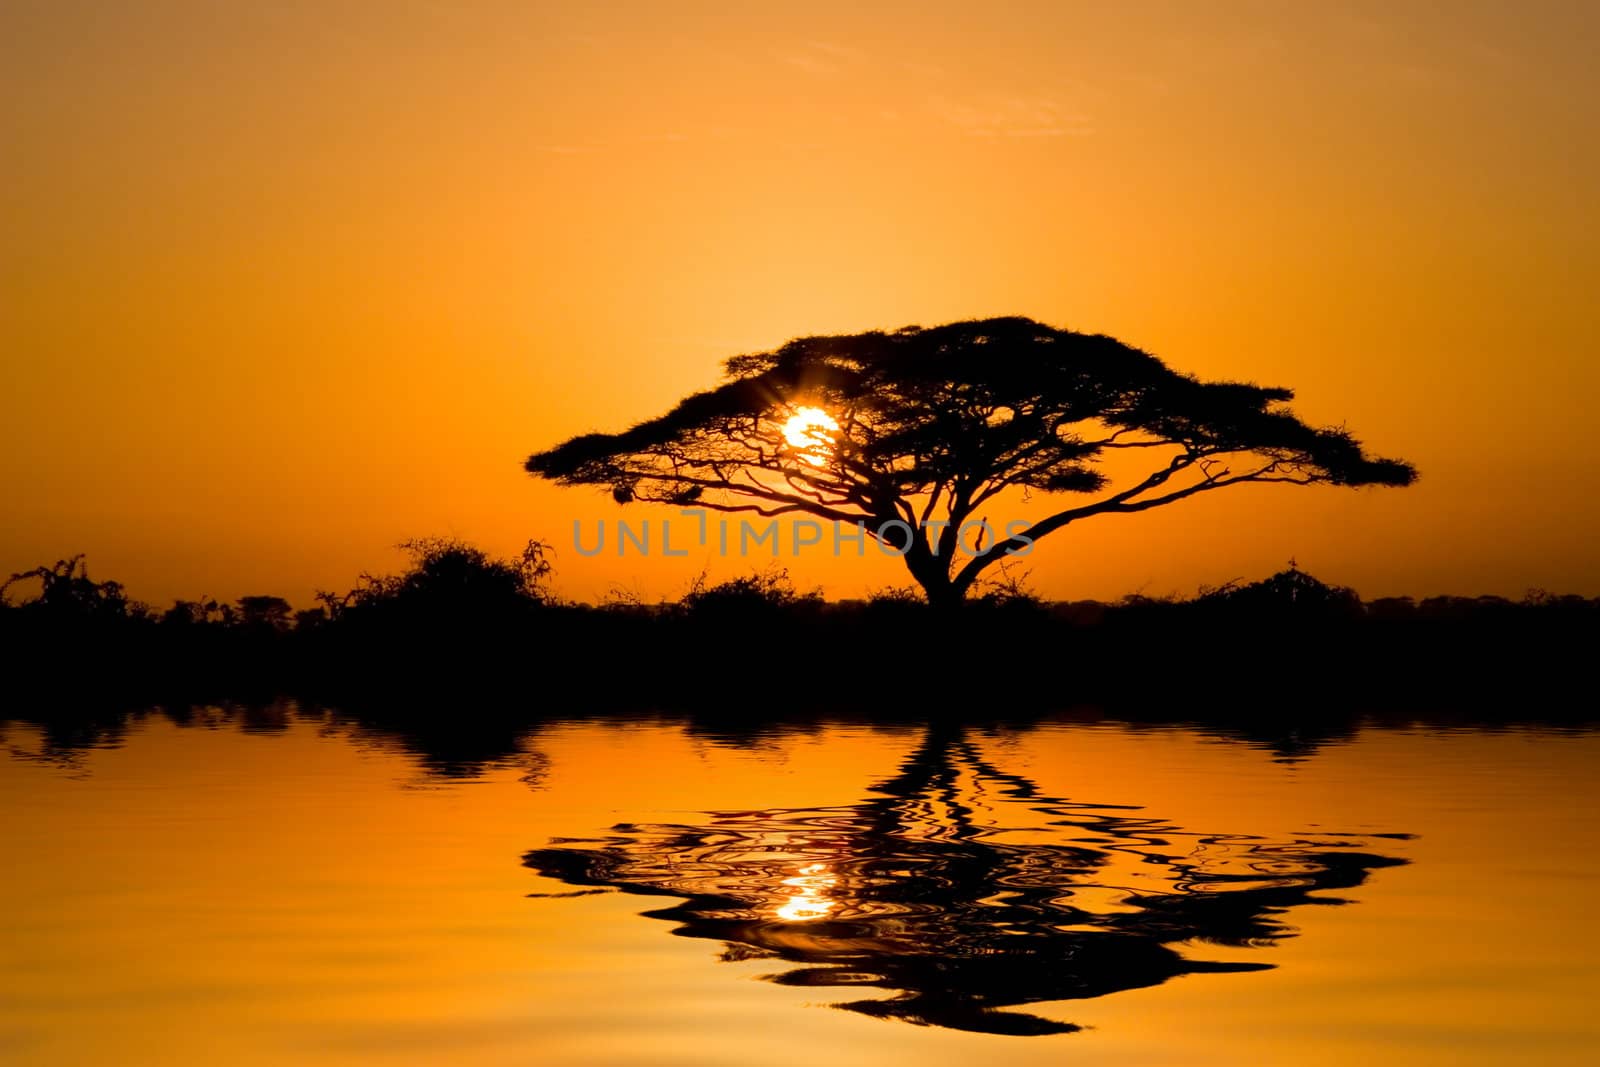 Acacia Tree at Sunrise by ajn